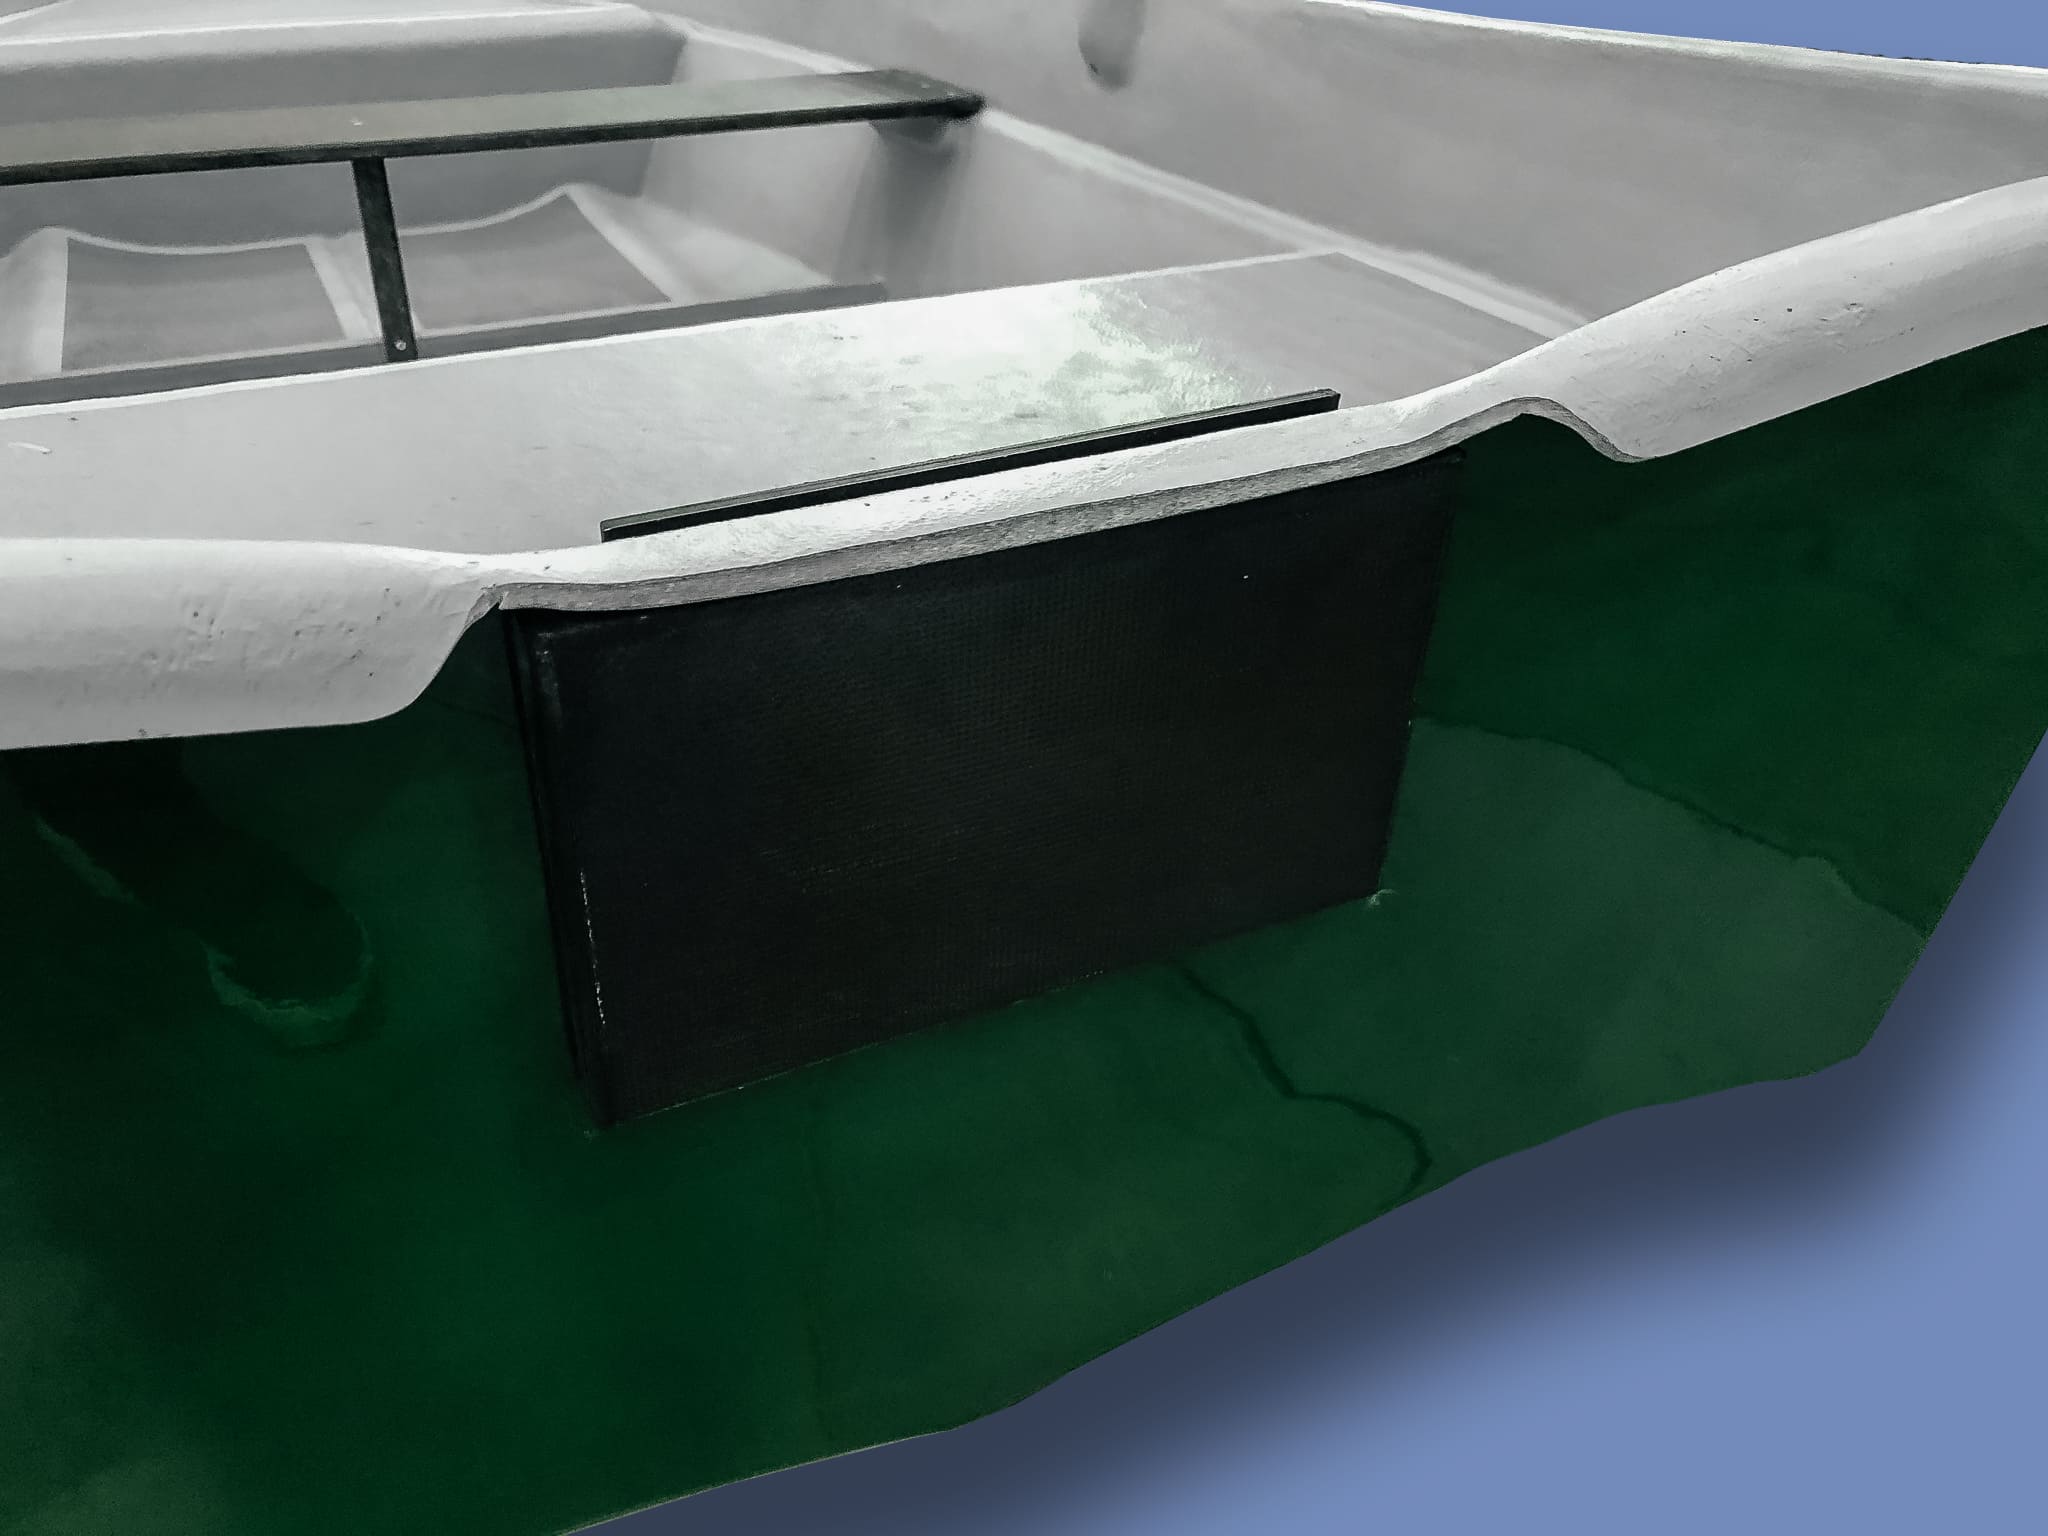 Пластиковая лодка «афалина-360 люкс»